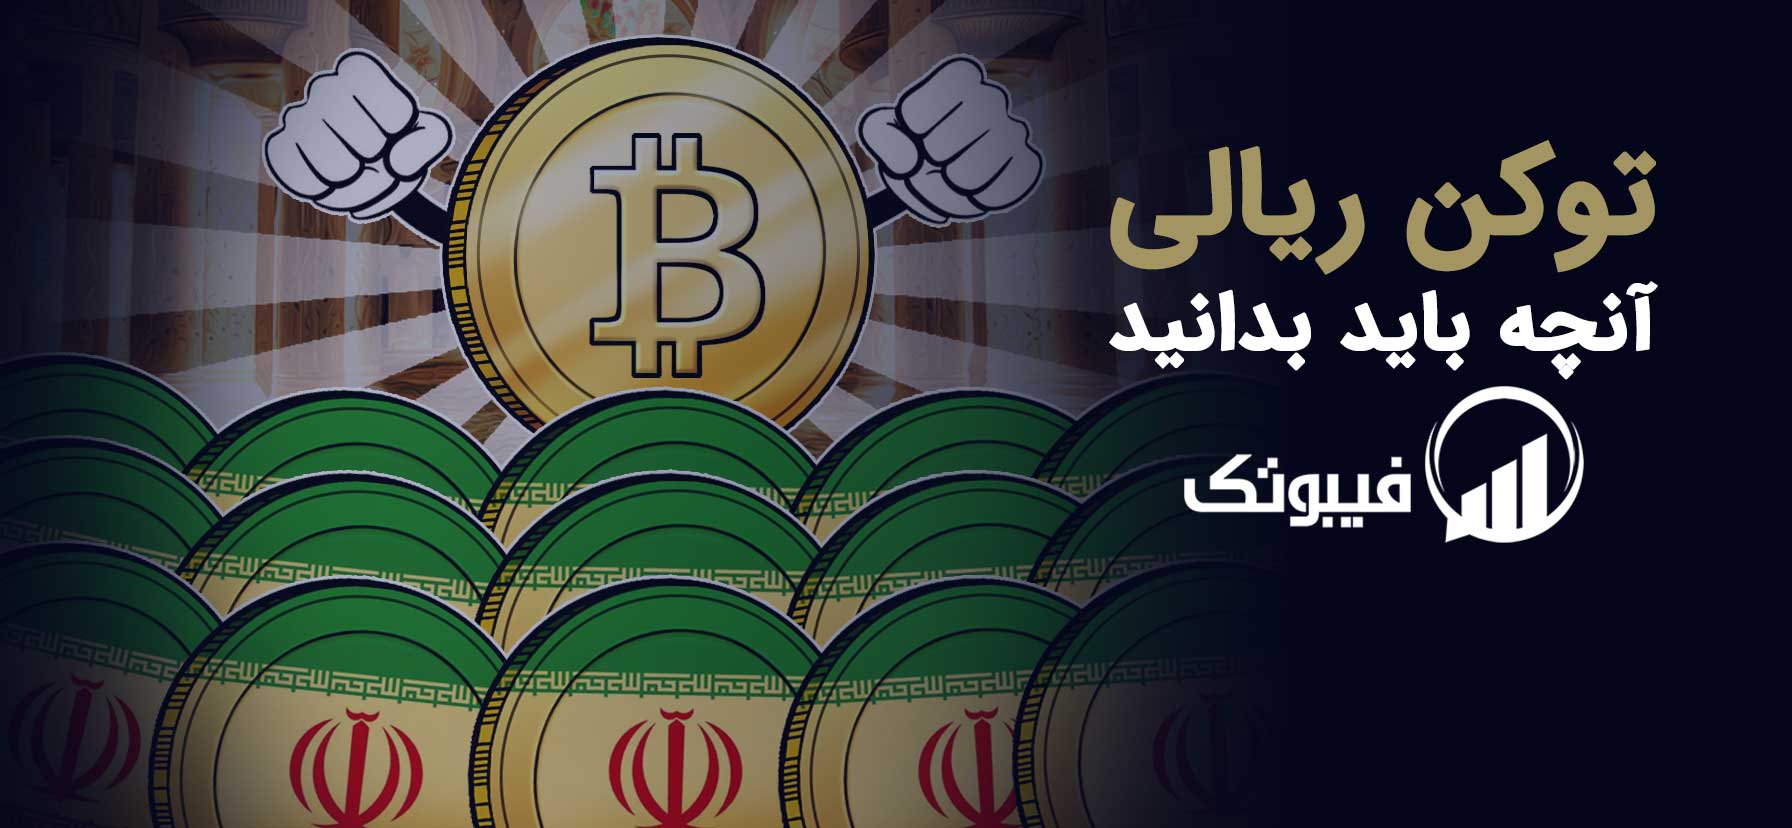 , توکن ریالی، اولین ارز دیجیتال ایرانی